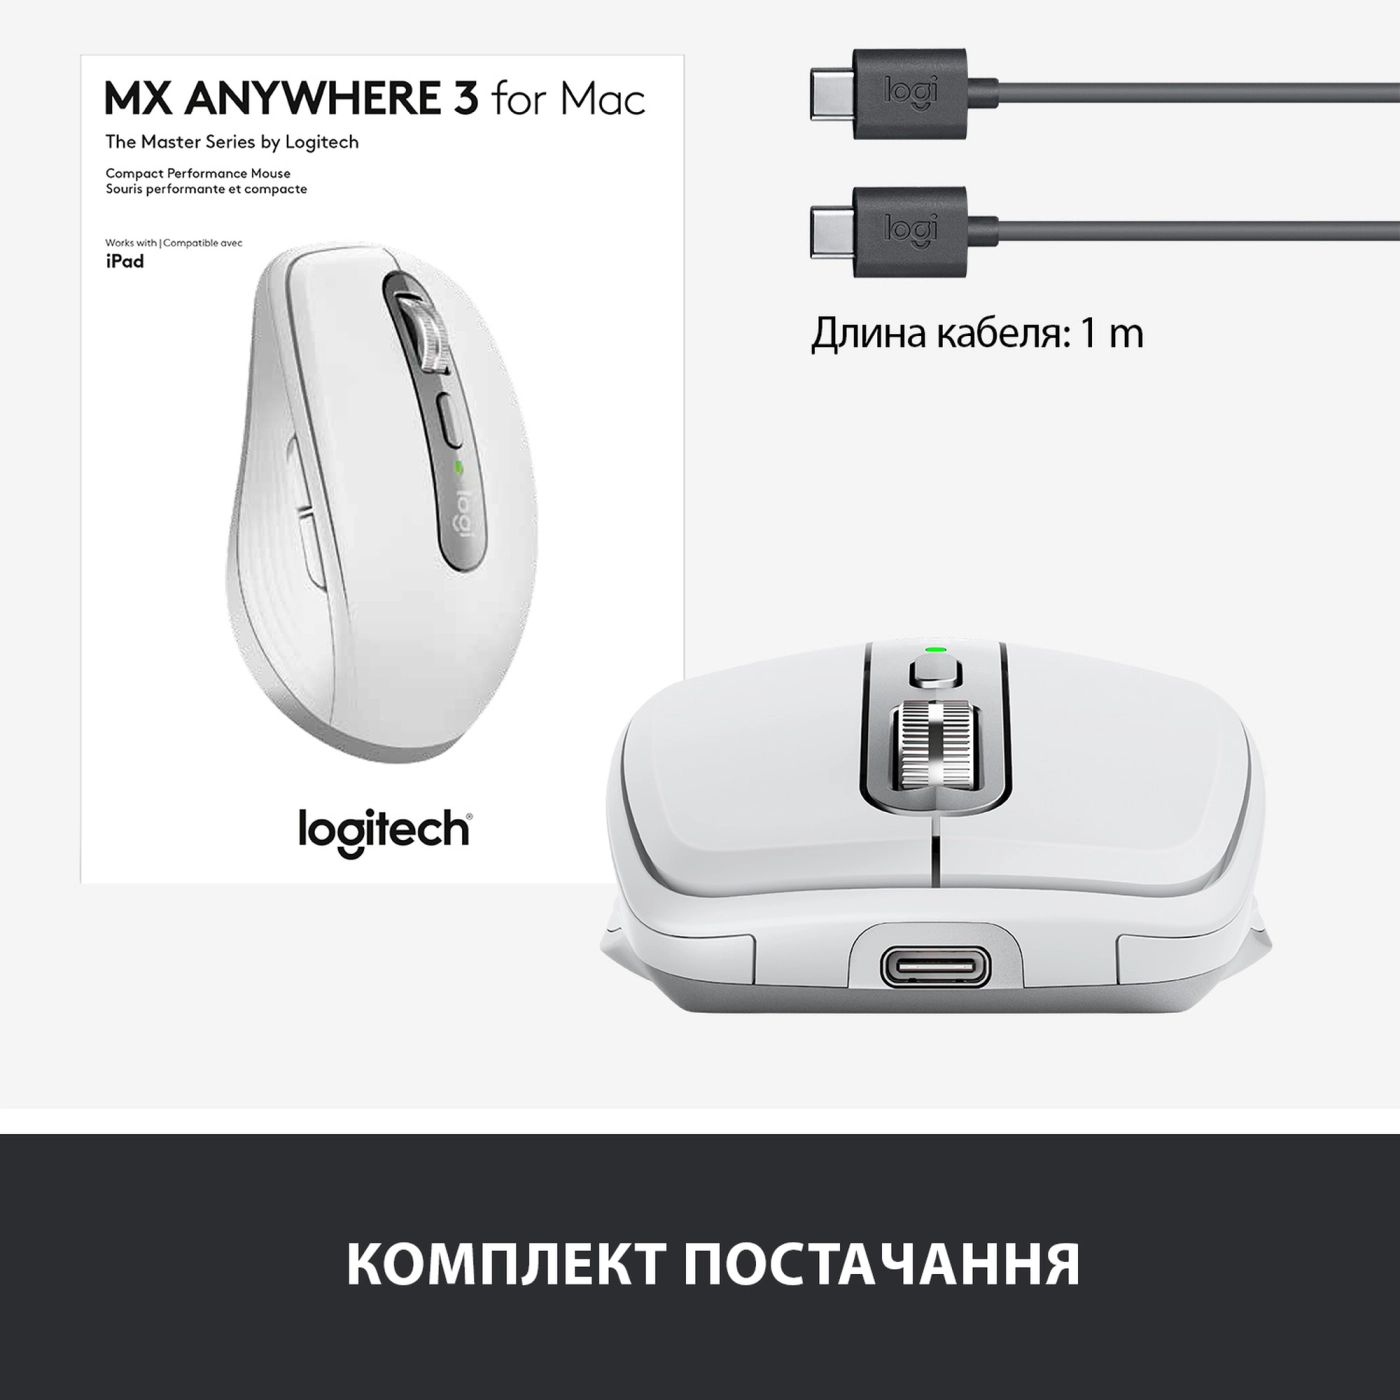 Купить Мышь Logitech MX Anywhere 3 for Mac pale-gaey BT (910-005991) - фото 9